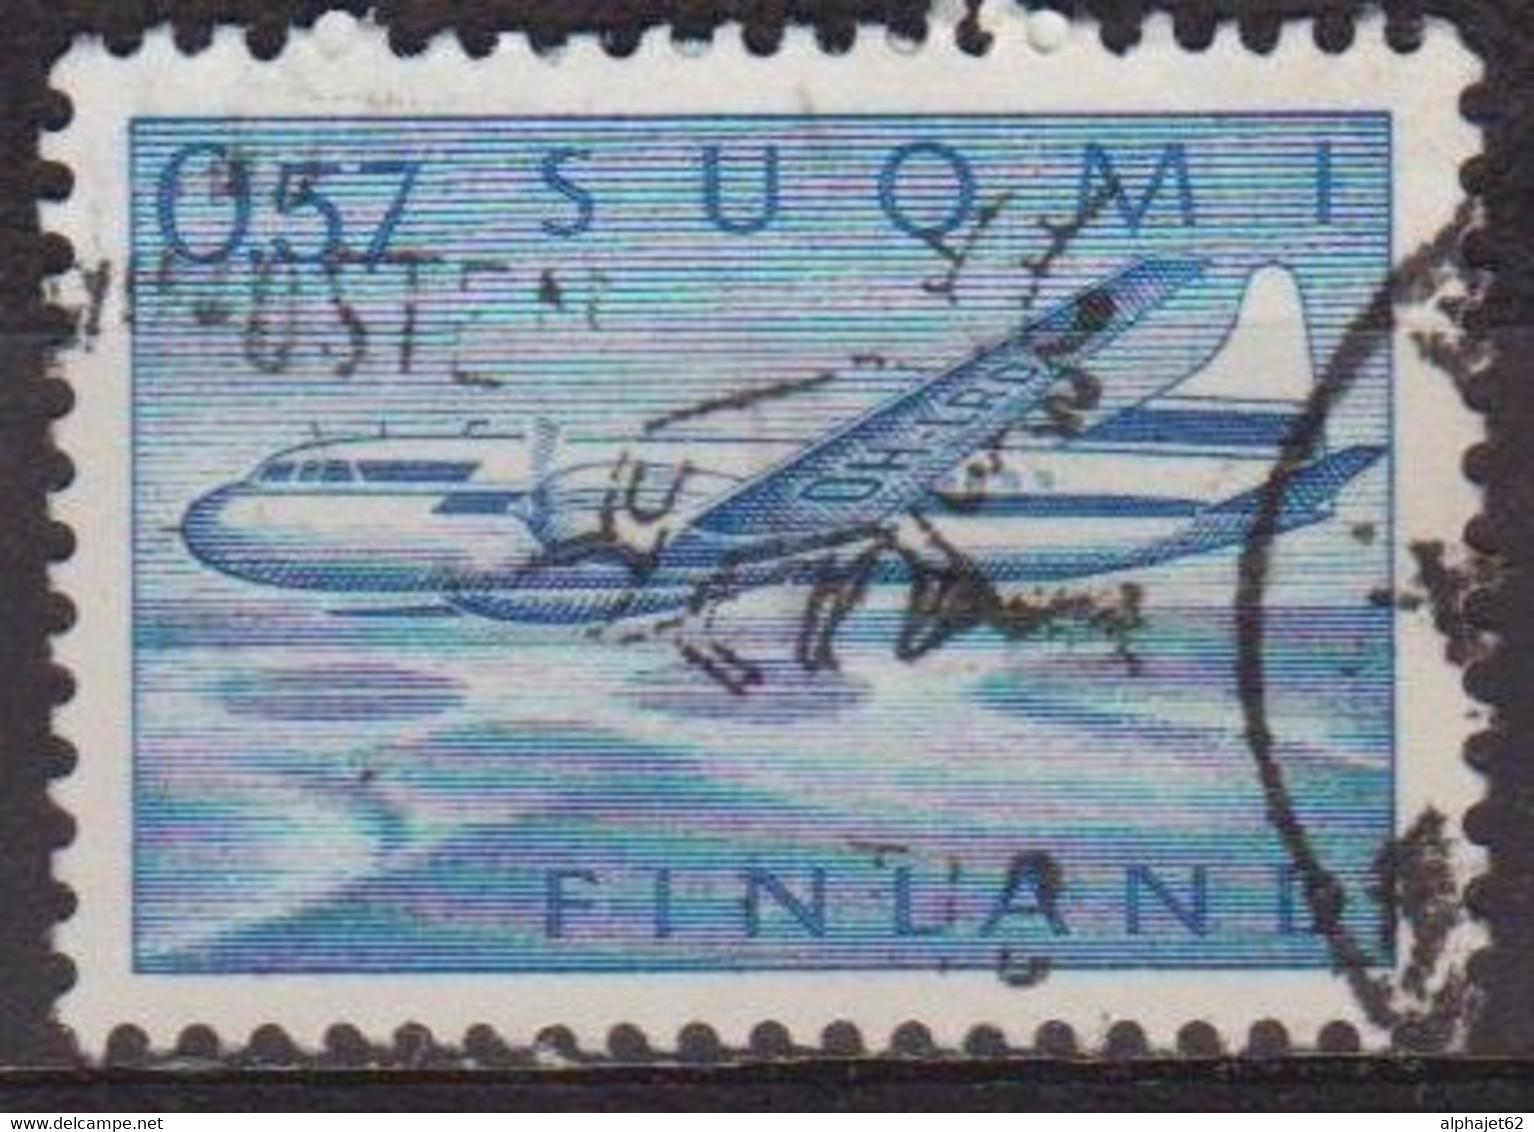 Convair 440, Bimoteur - FINLANDE - Avion De Ligne - Aviation - N° 12 - 1970 - Oblitérés